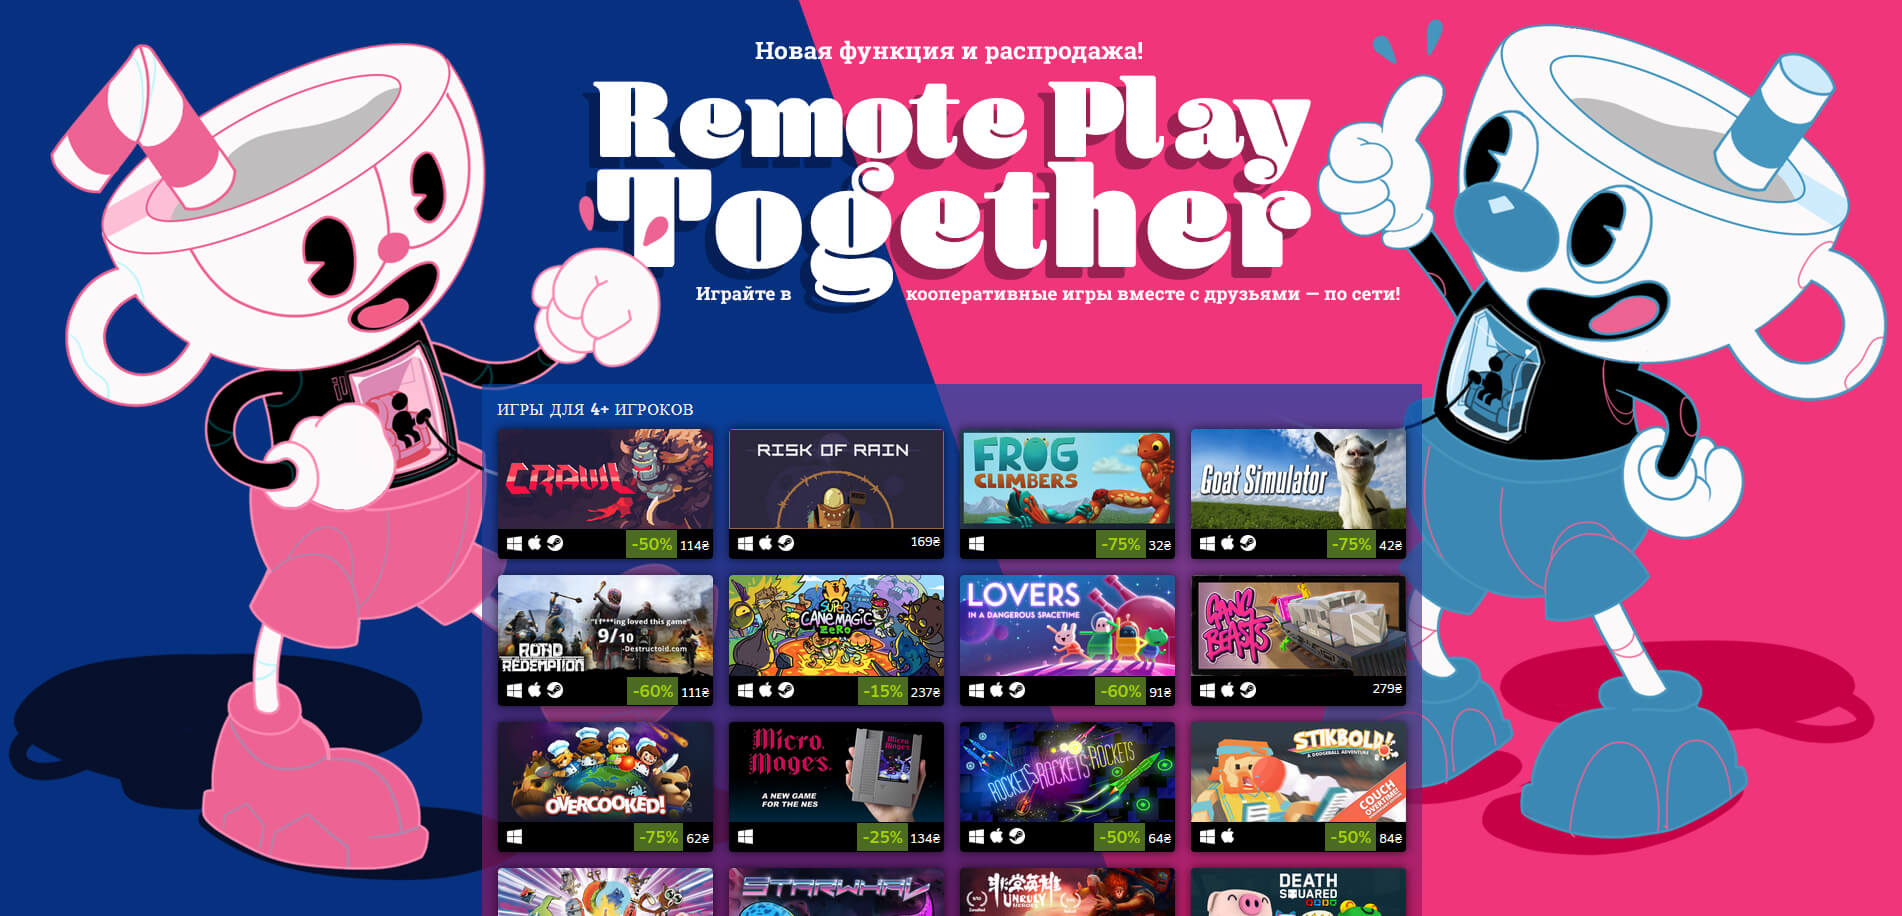 Функция Steam Remote Play Together официально запущена (фото)